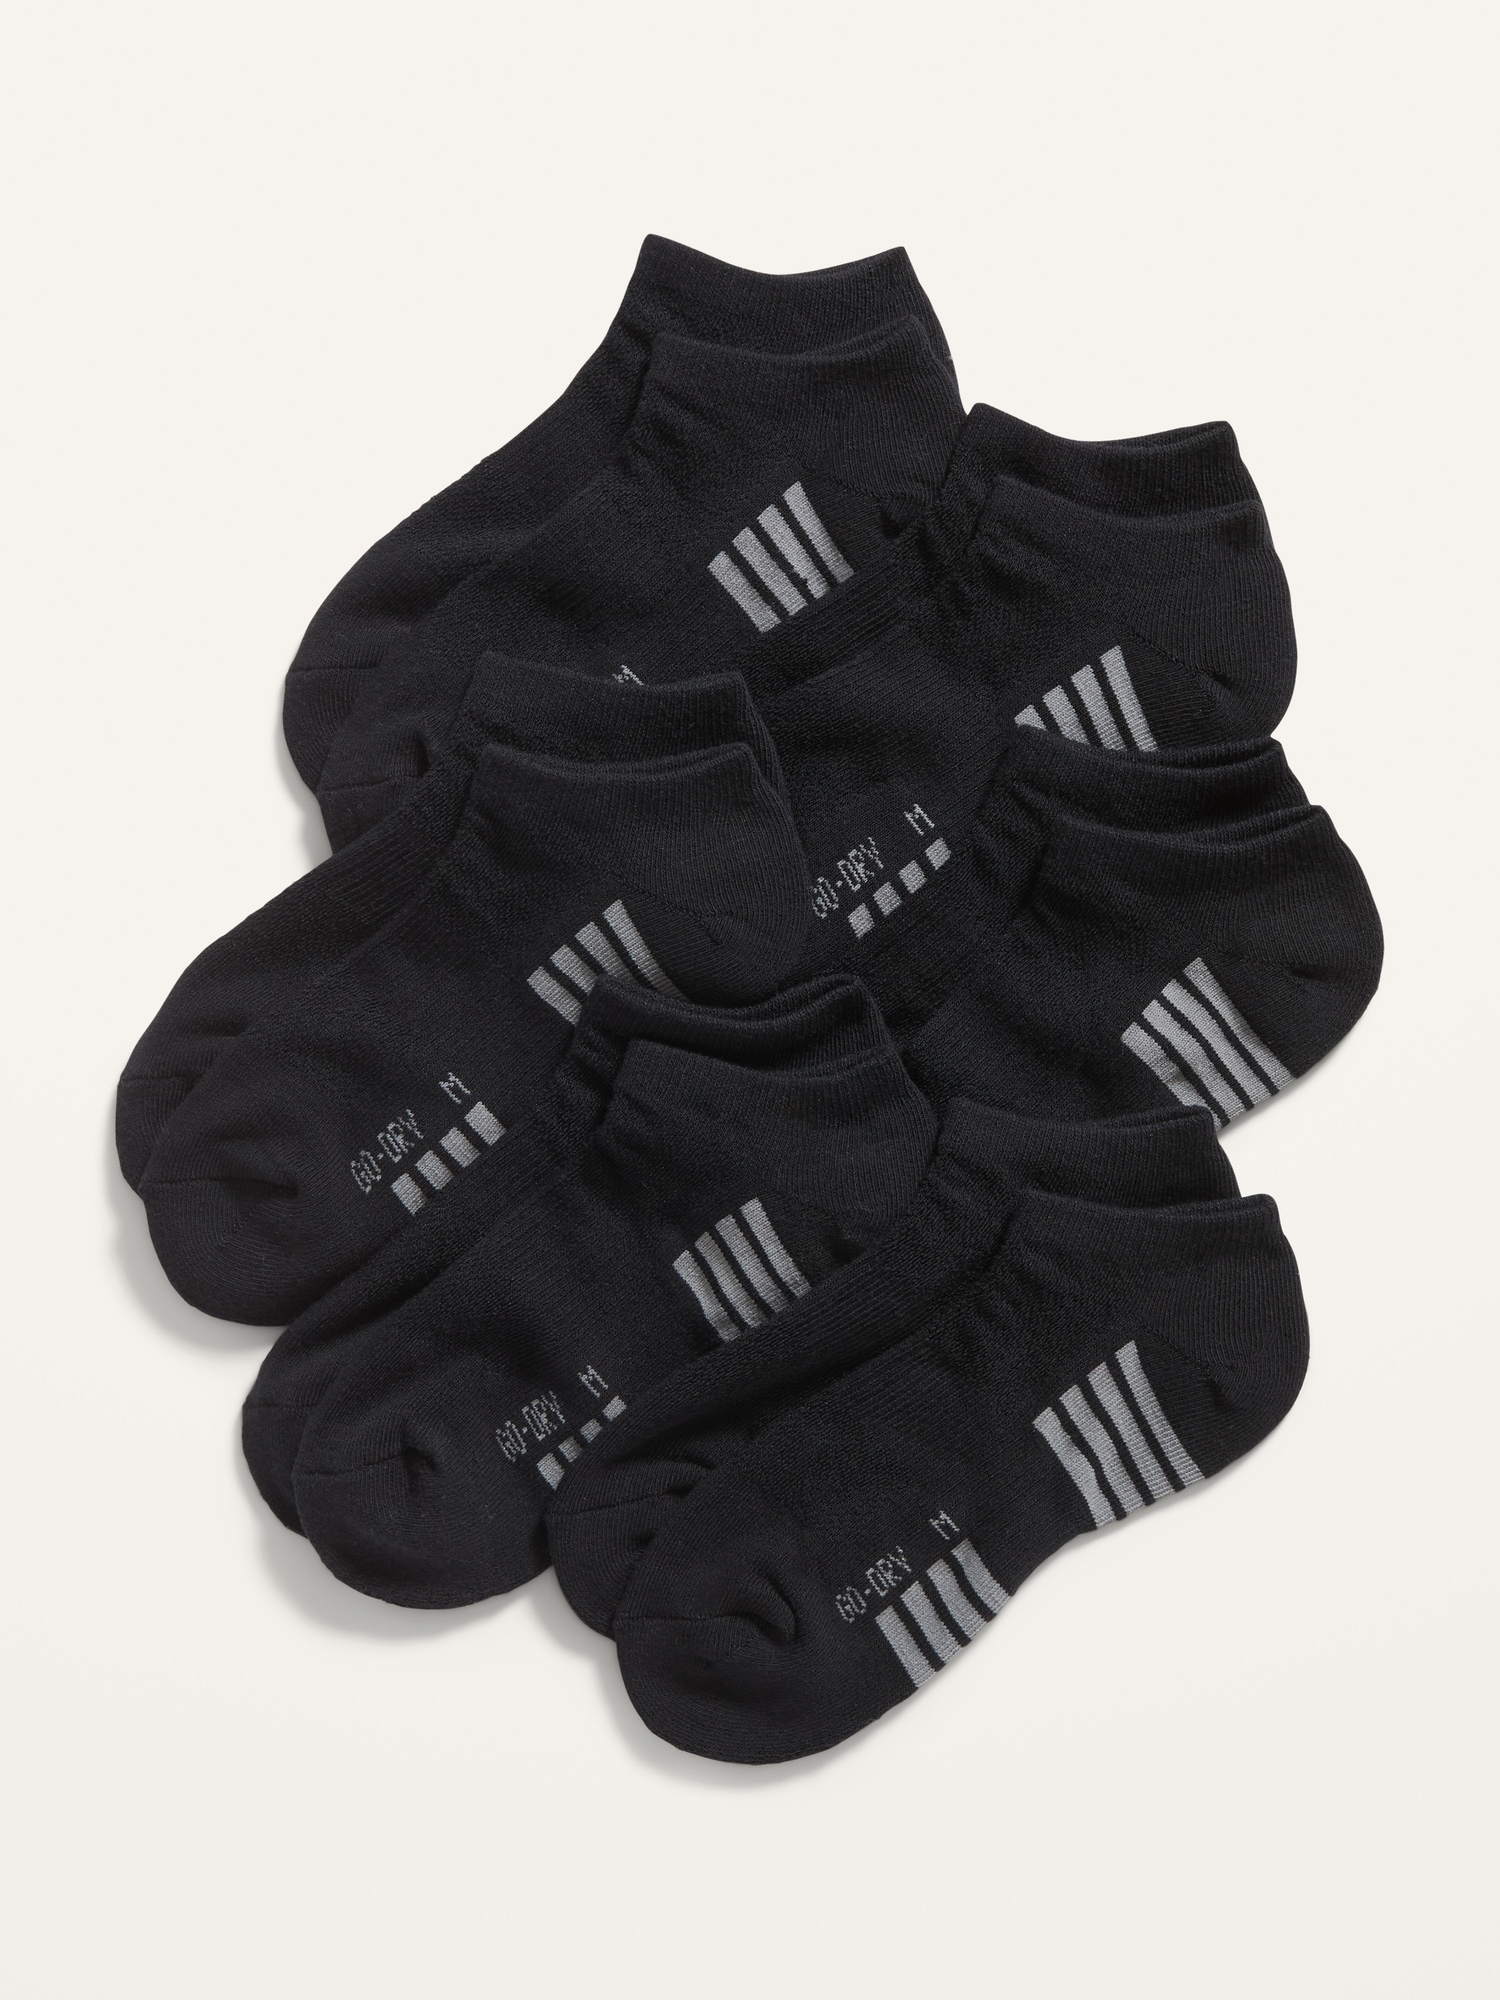 Old Navy Go-Dry Ankle Socks 6-Pack for Boys black. 1